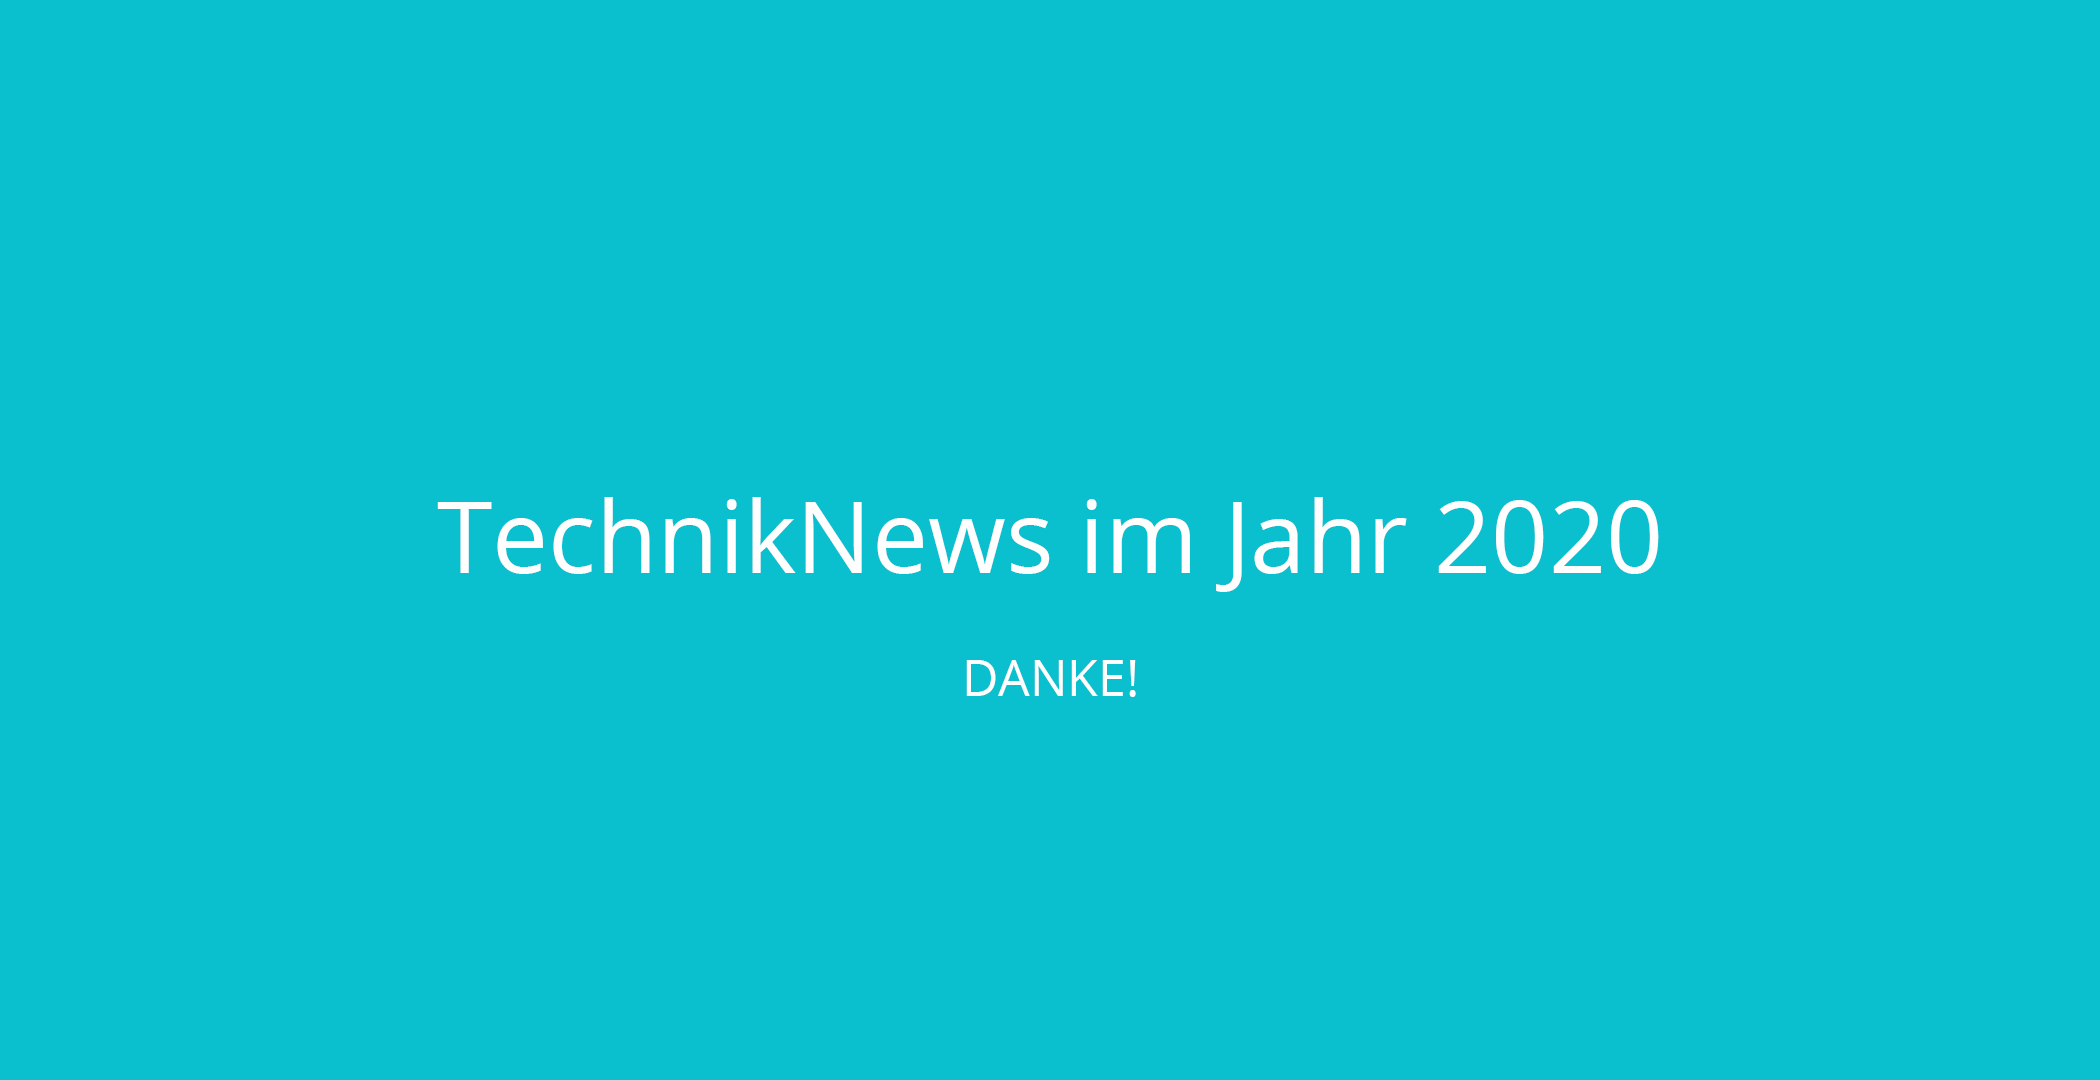 TechnikNews 2020